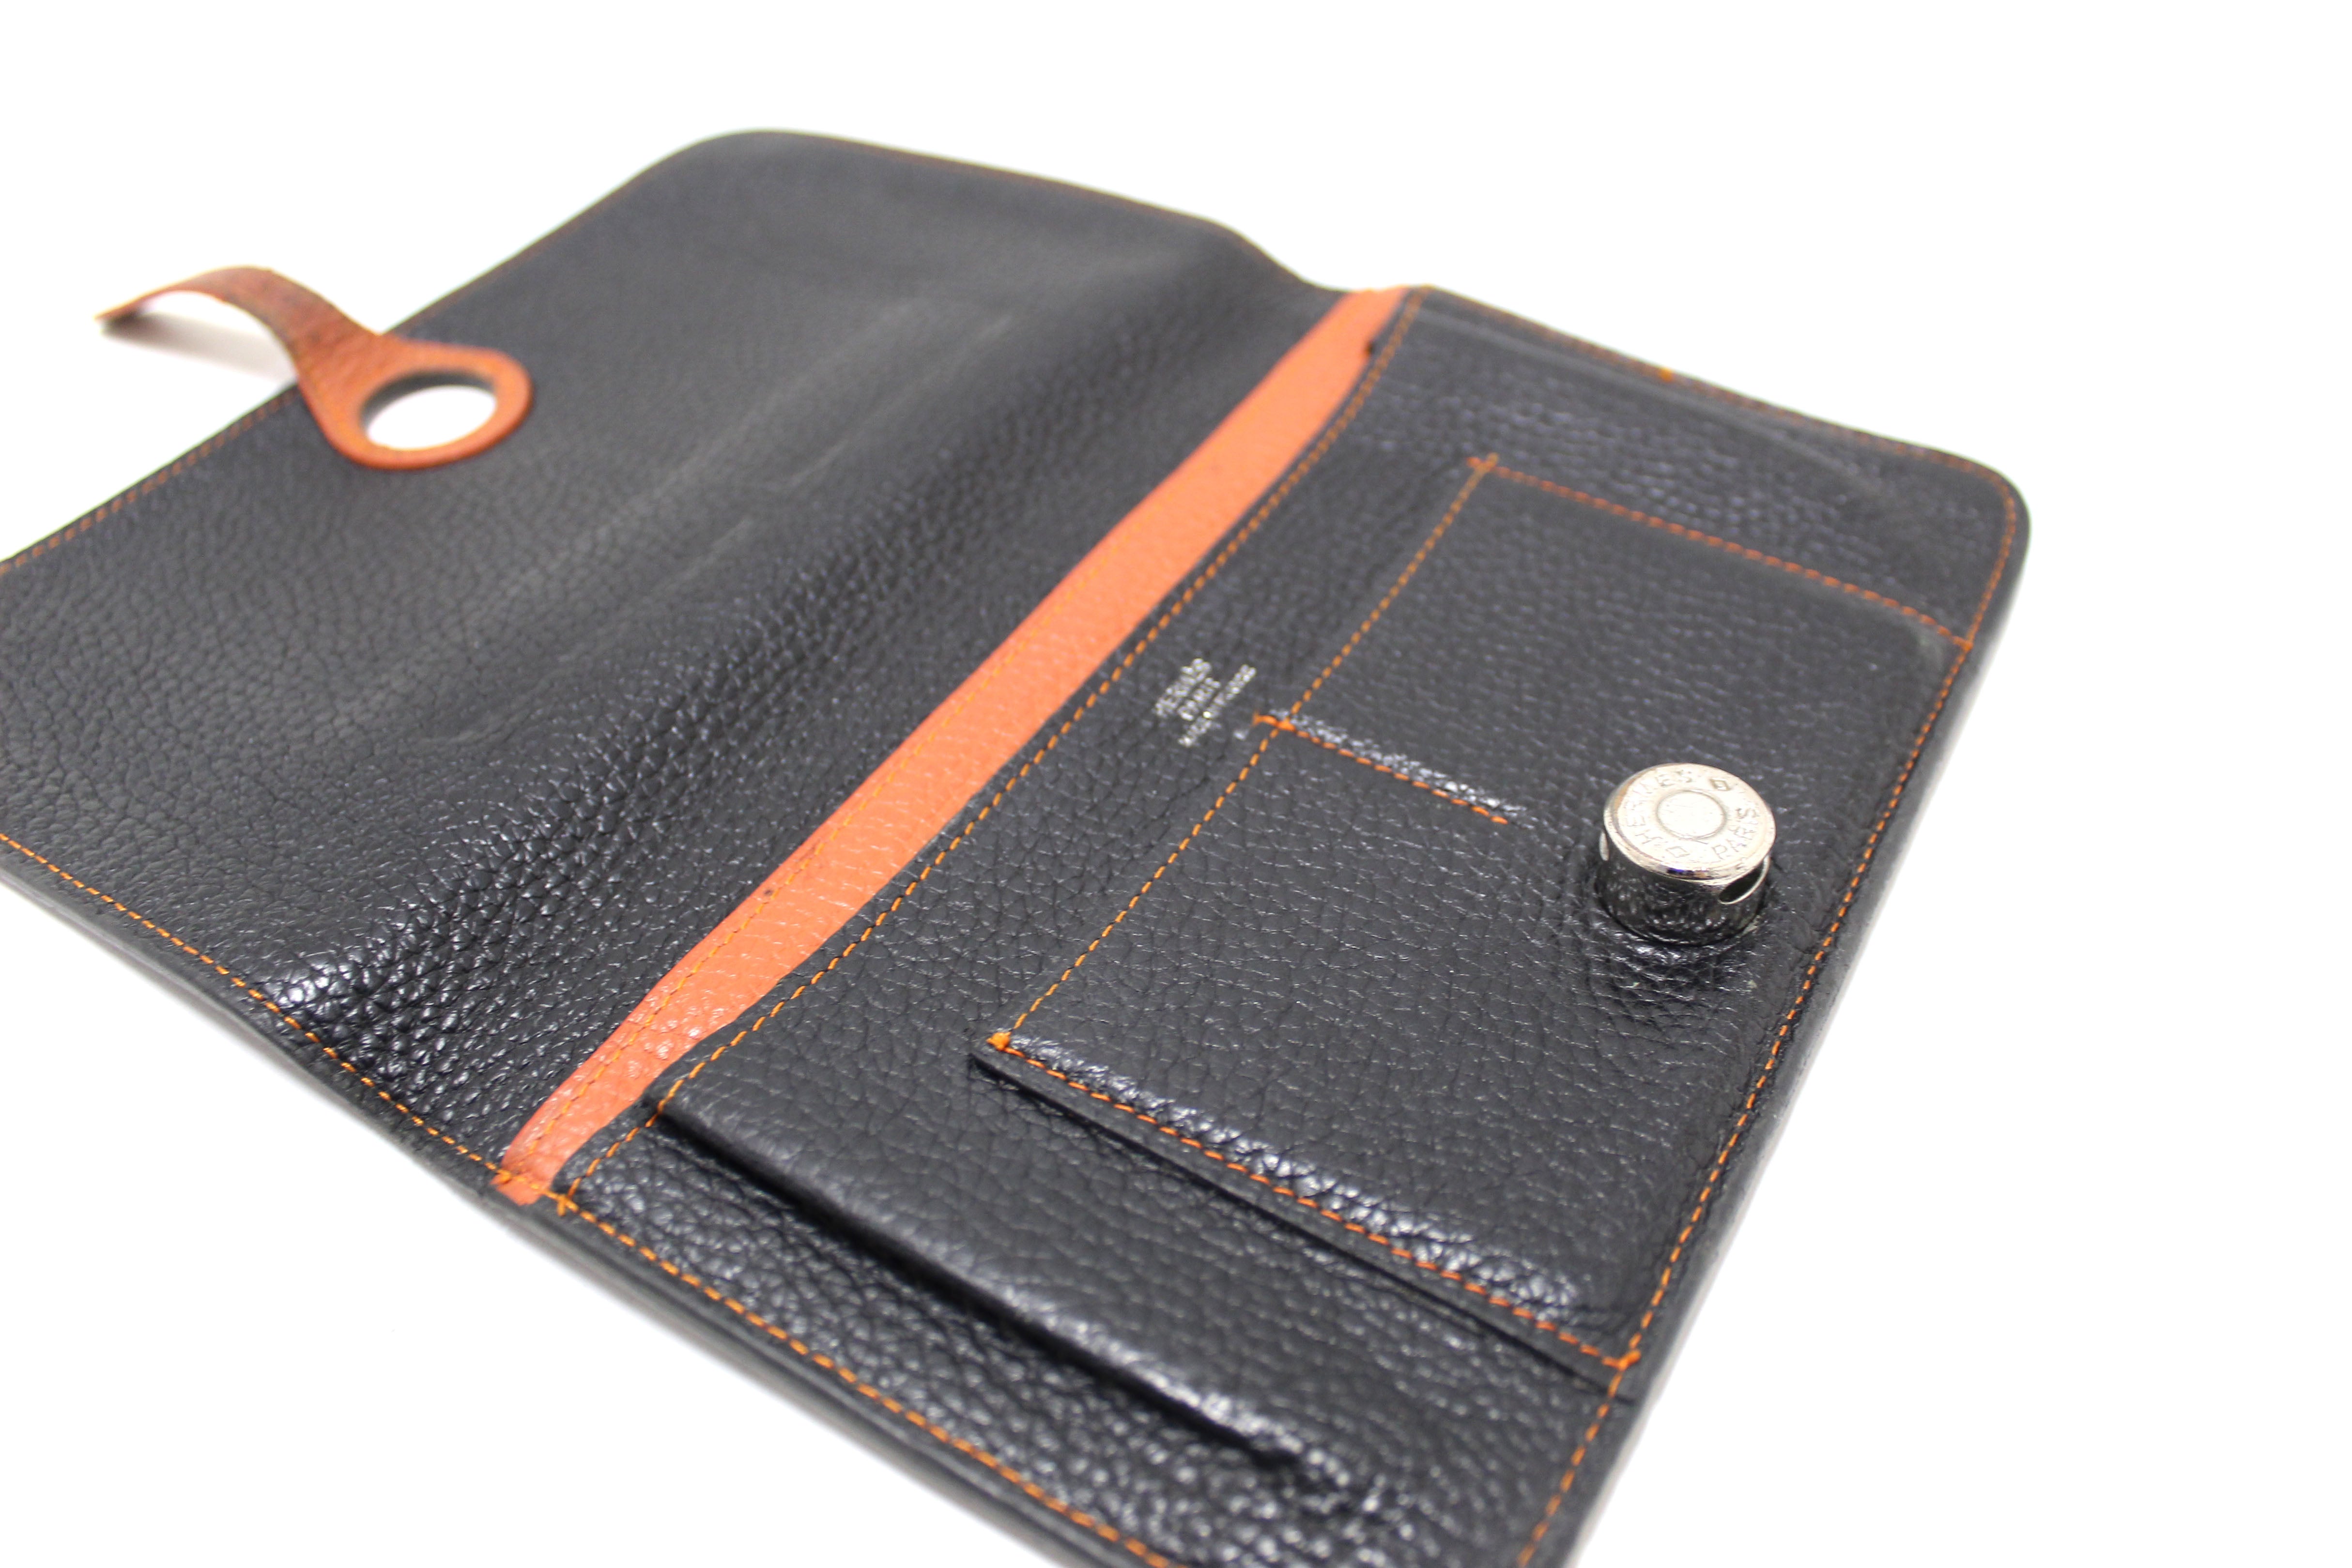 HERMES Togo Dogon Compact Wallet Black 1233007